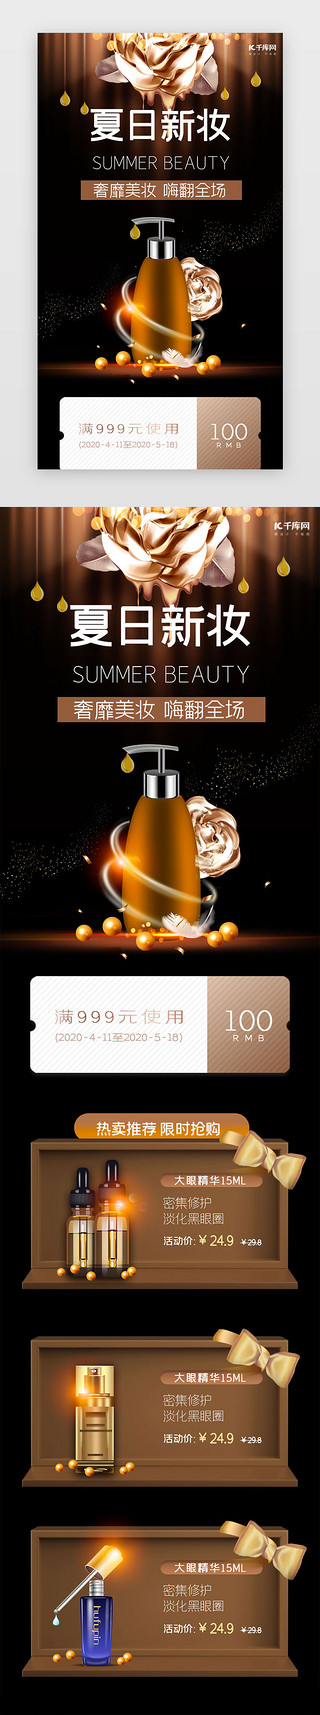 夏日化妆品UI设计素材_棕色简约夏日美妆促销h5长图电商